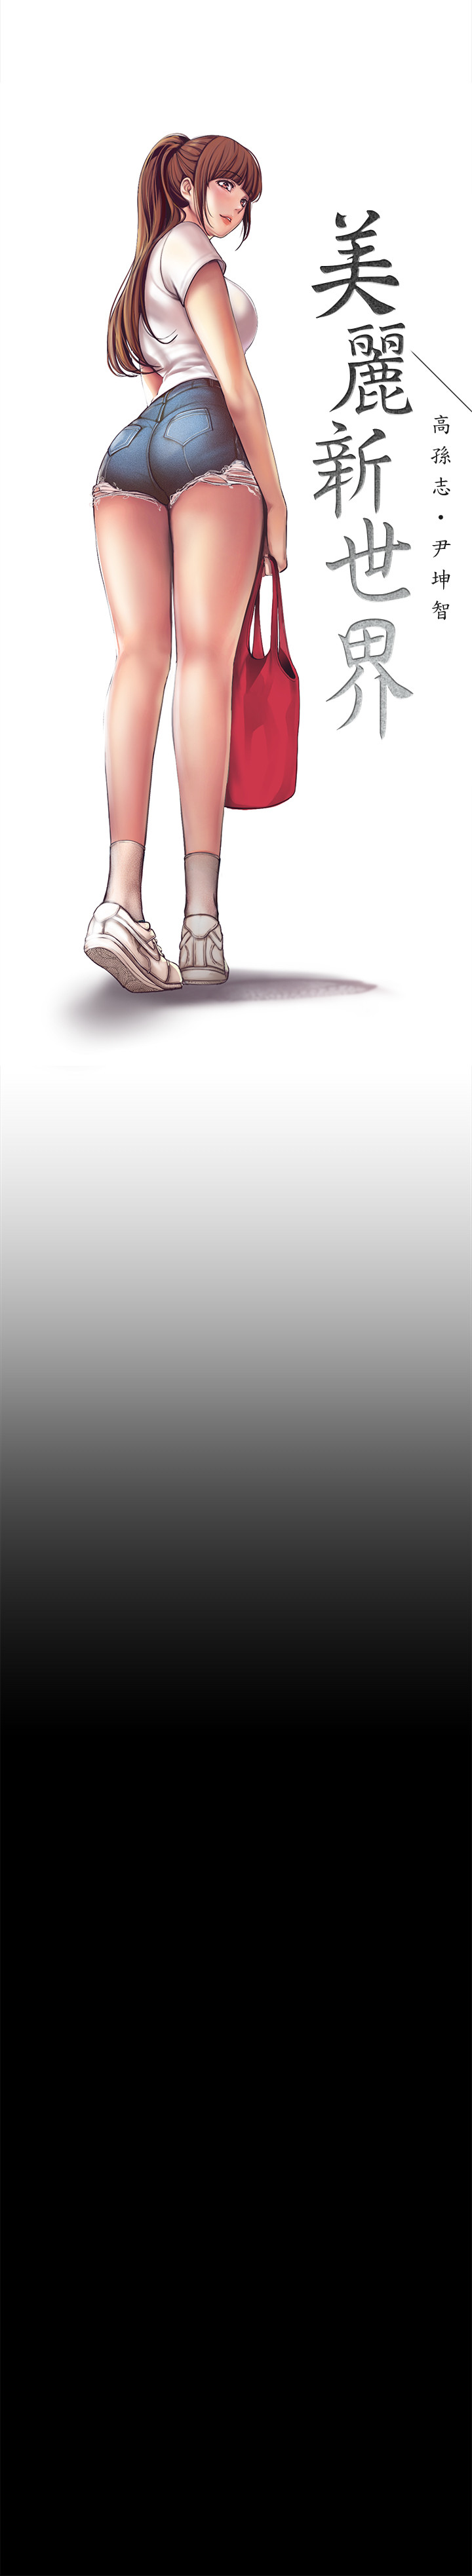 [尹坤志&高孫志]美丽新世界 EP.1(正體中文)高畫質版本 [尹坤志&高孫志]美麗新世界 第1話 女廁的針孔攝影機 2019.04.27高畫質版本